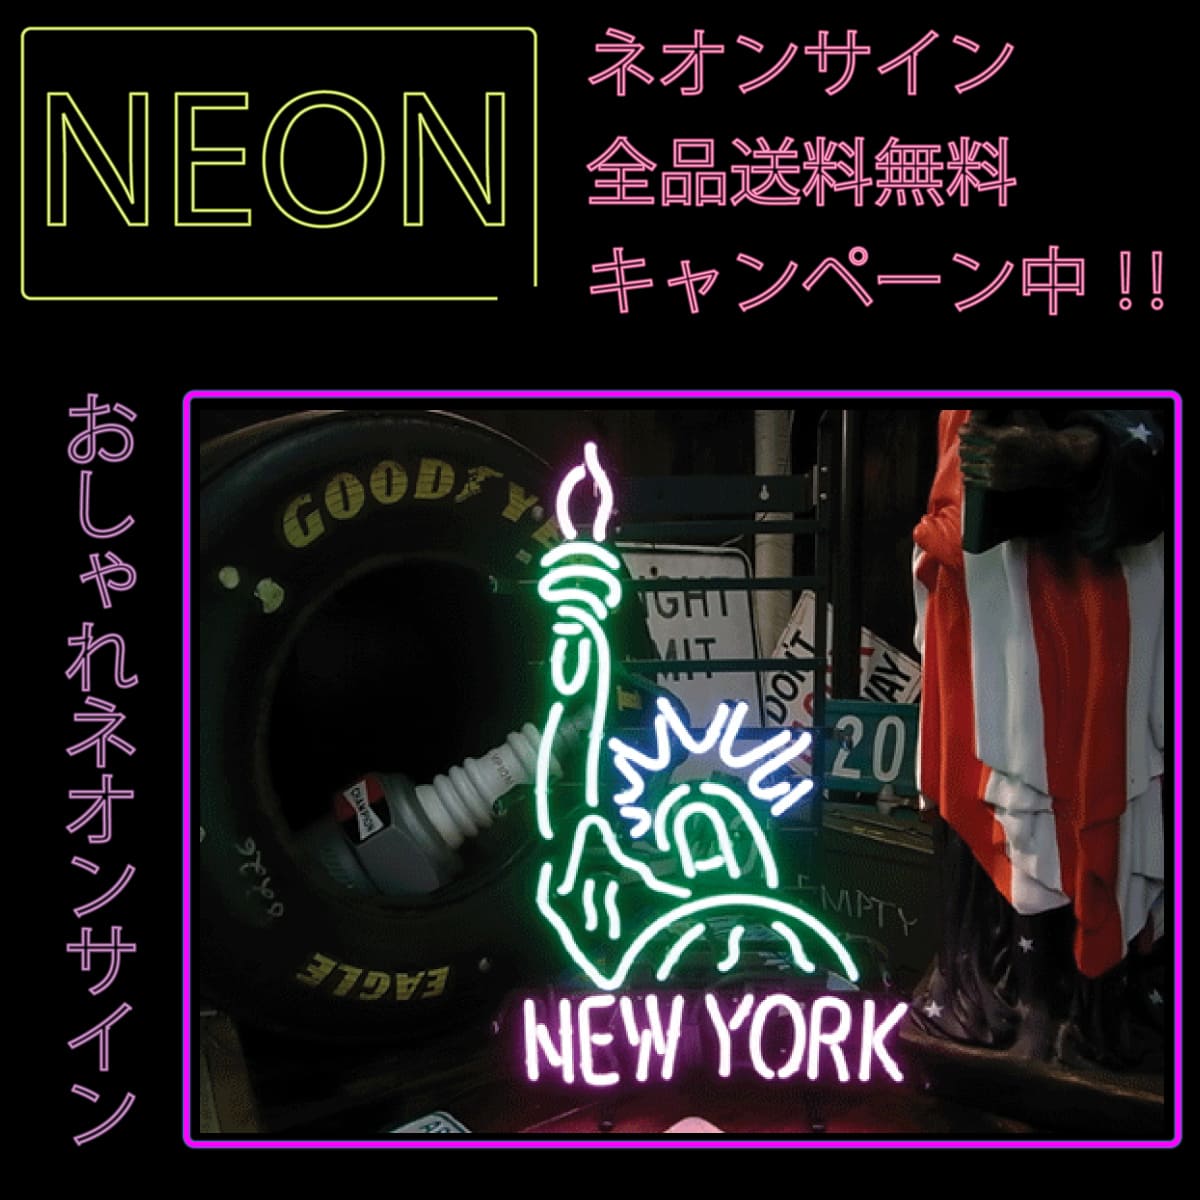 ネオンサイン 送料無料 カッコいい インテリア NEW YORK ニューヨーク 自由の女神 ガレージ インスタ インスタ映え 海外ショップ